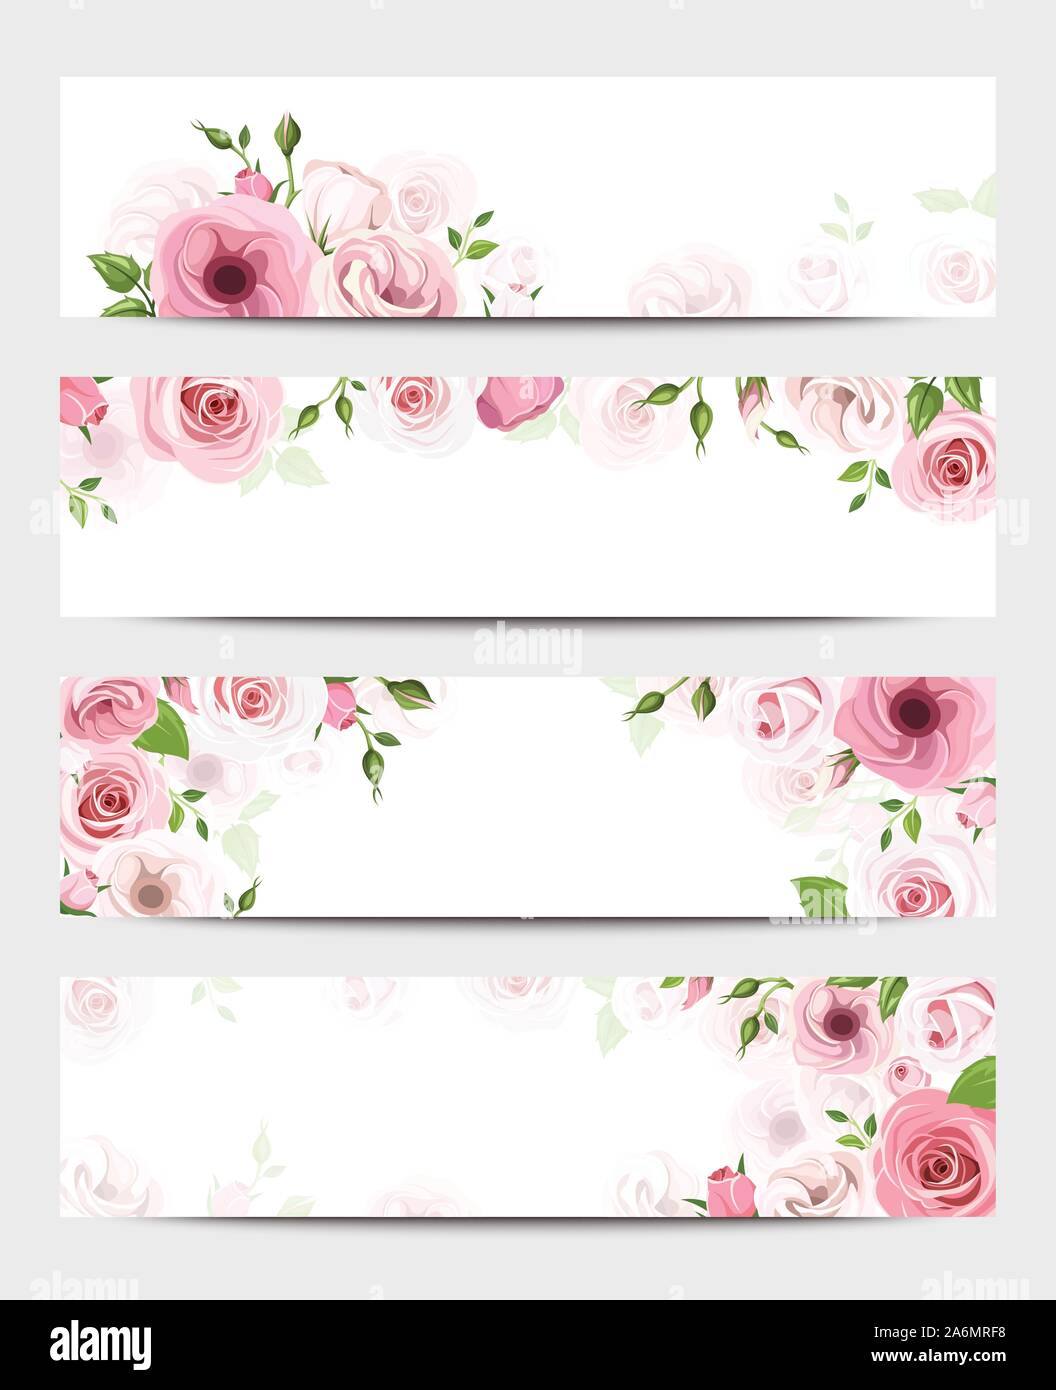 Conjunto de cuatro vectores banners web con rosas rosas y flores de lisianthus. Ilustración del Vector